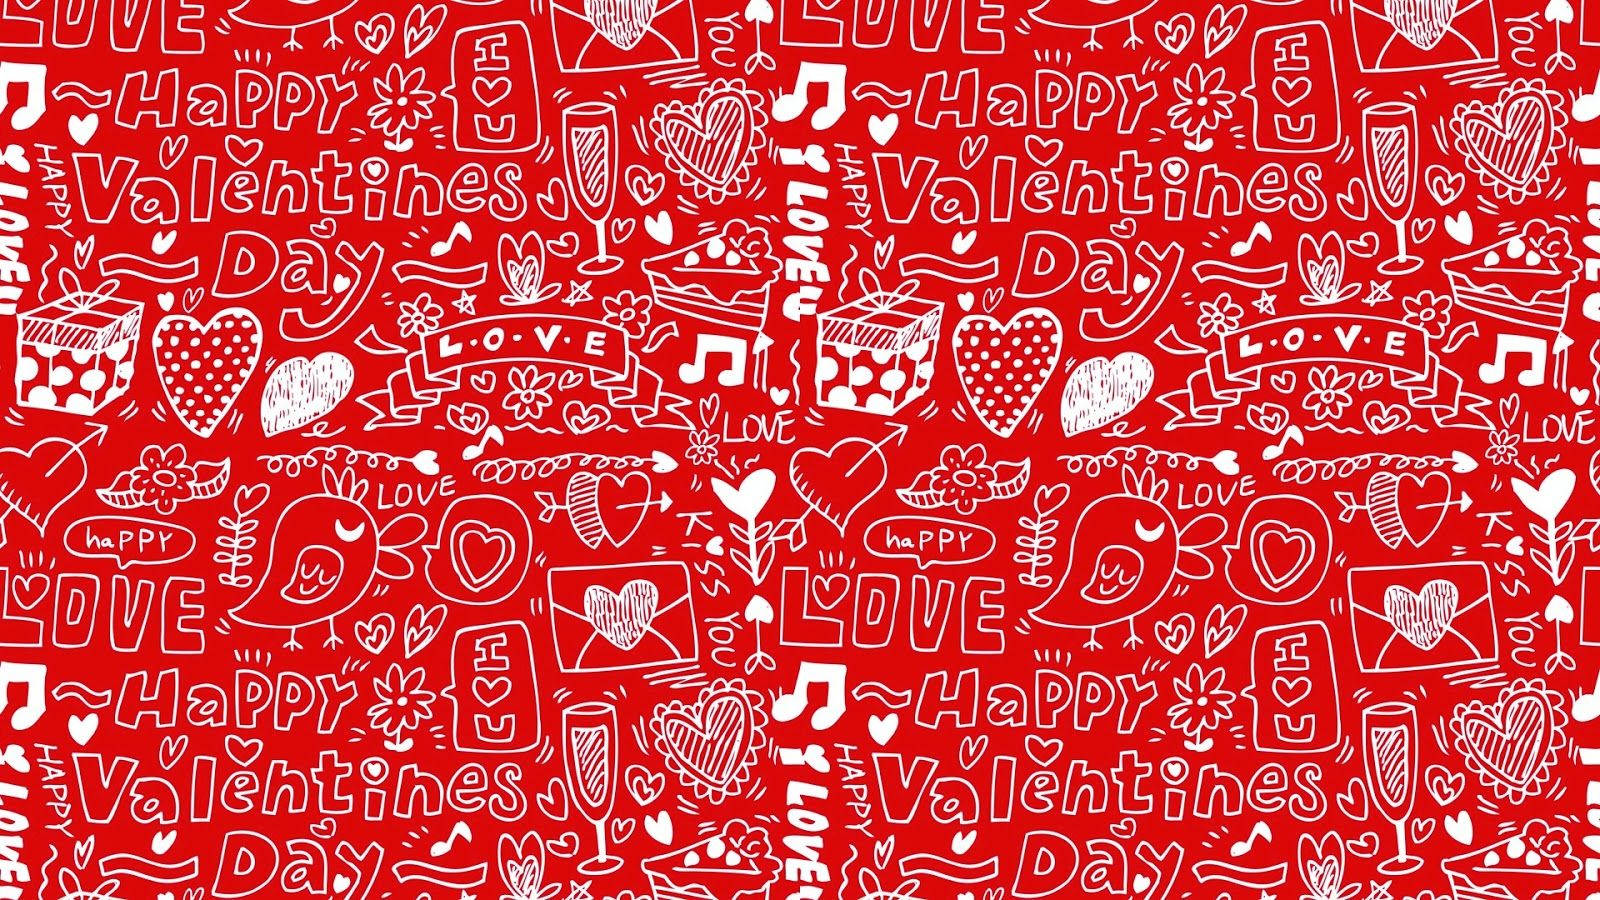 Valentines Desktop Collage Wallpaper